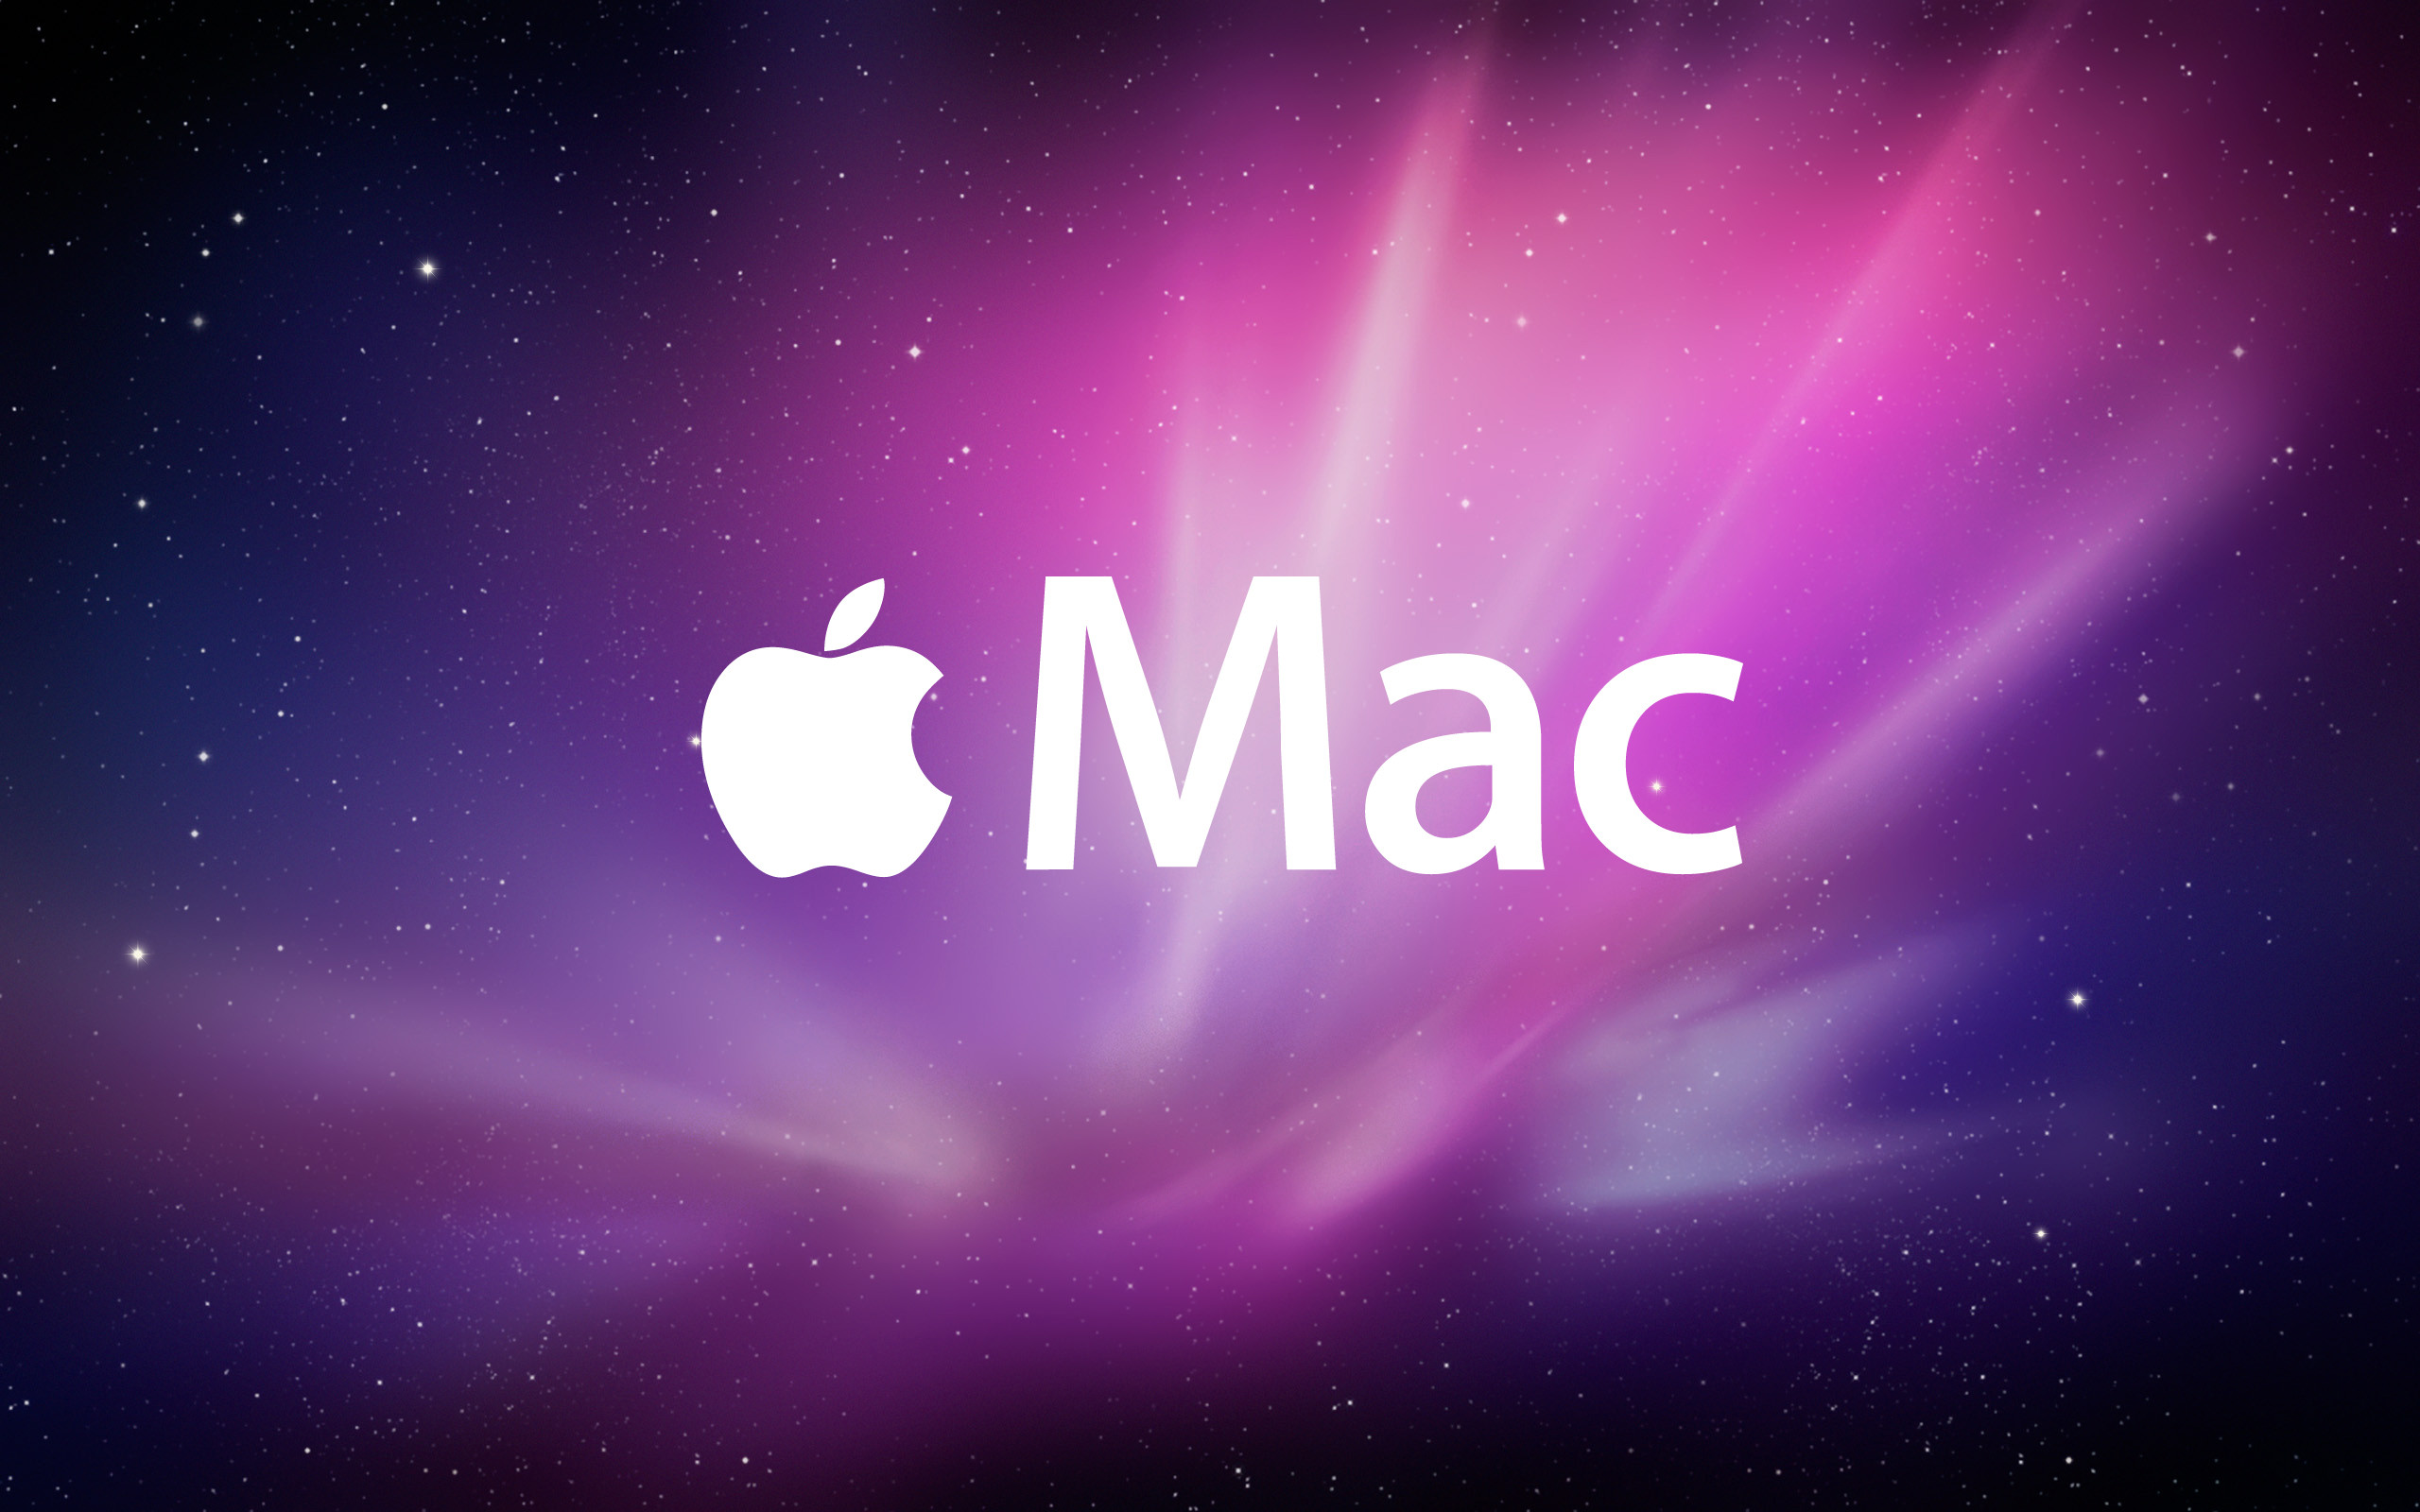 mac os 10.7.0 dmg download free